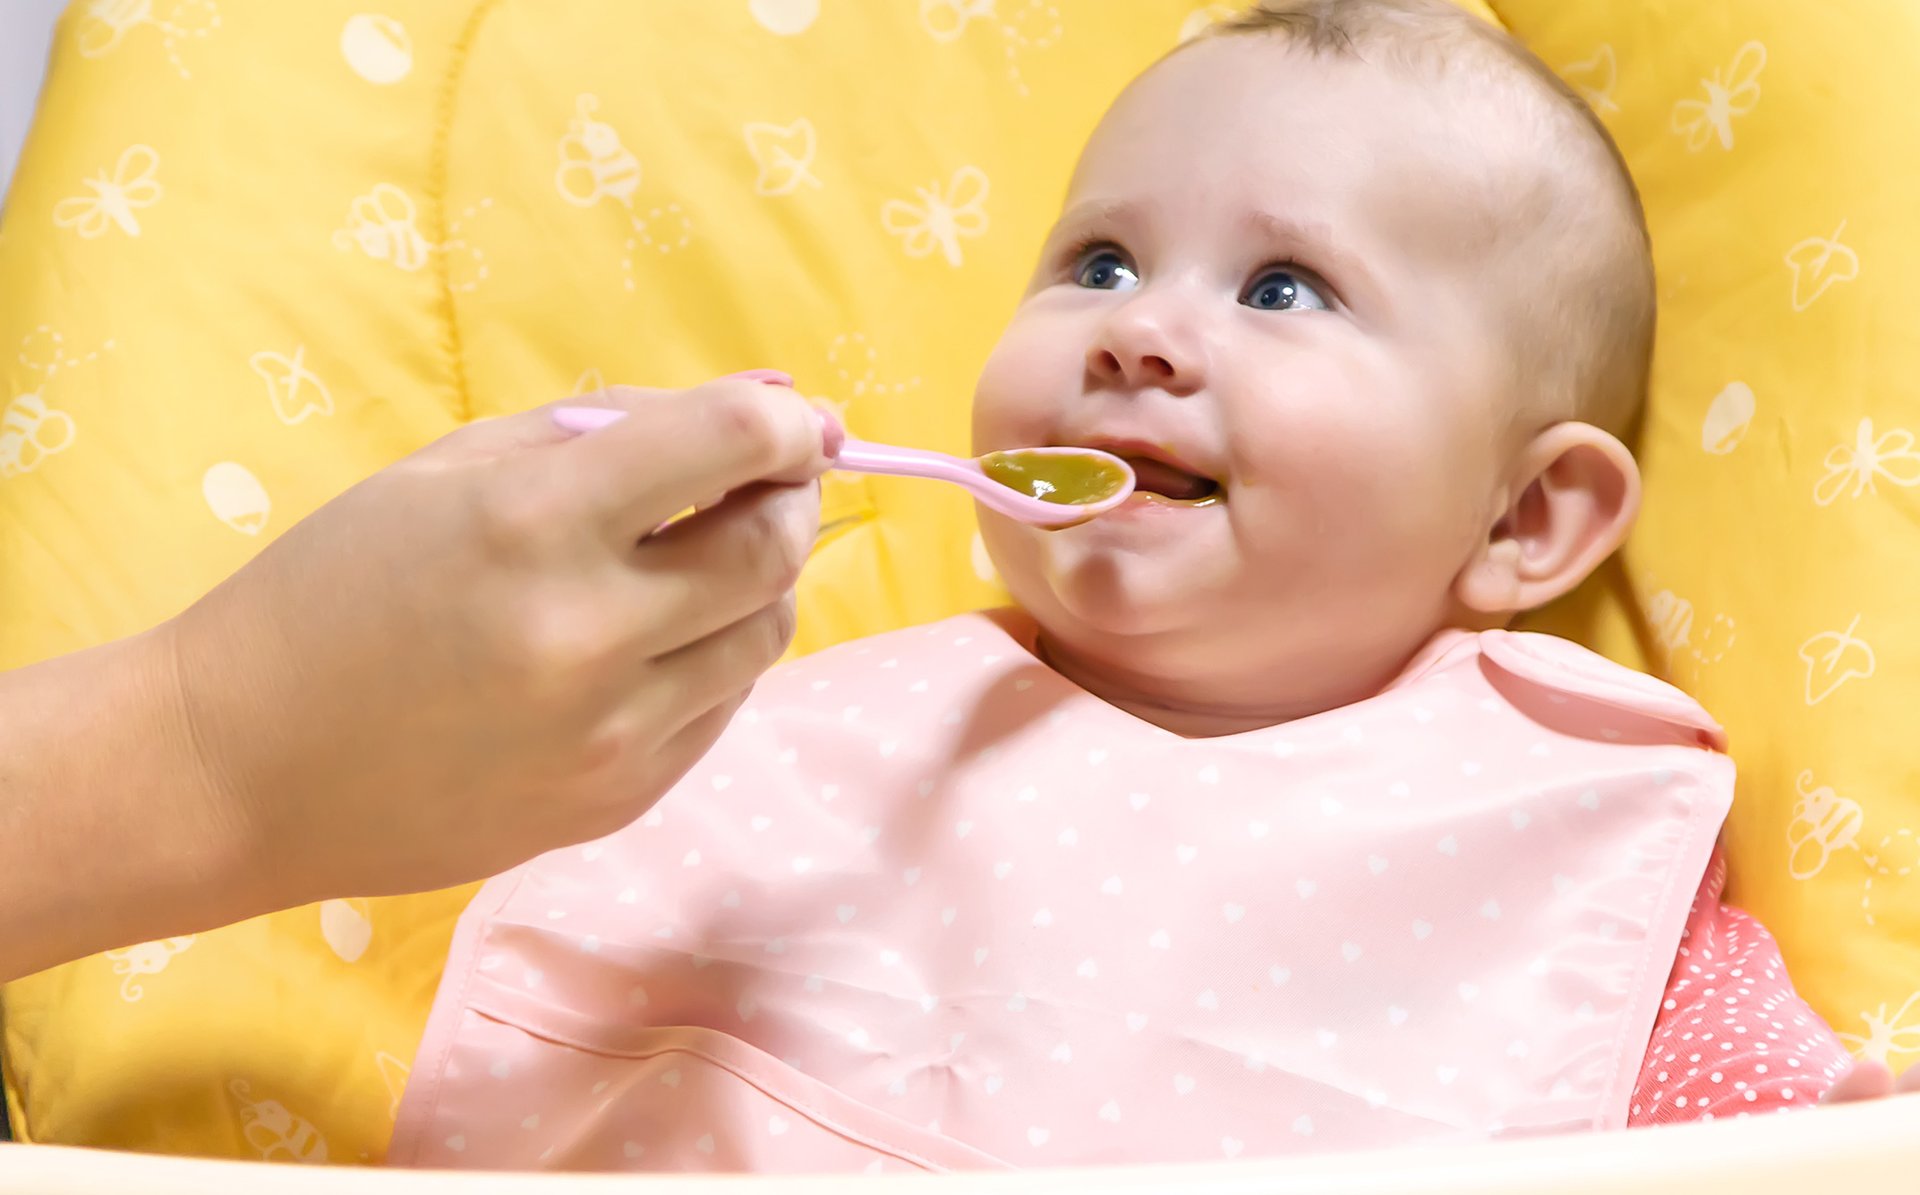 Glodne dziecko bierze do ust lyzeczke z zupka